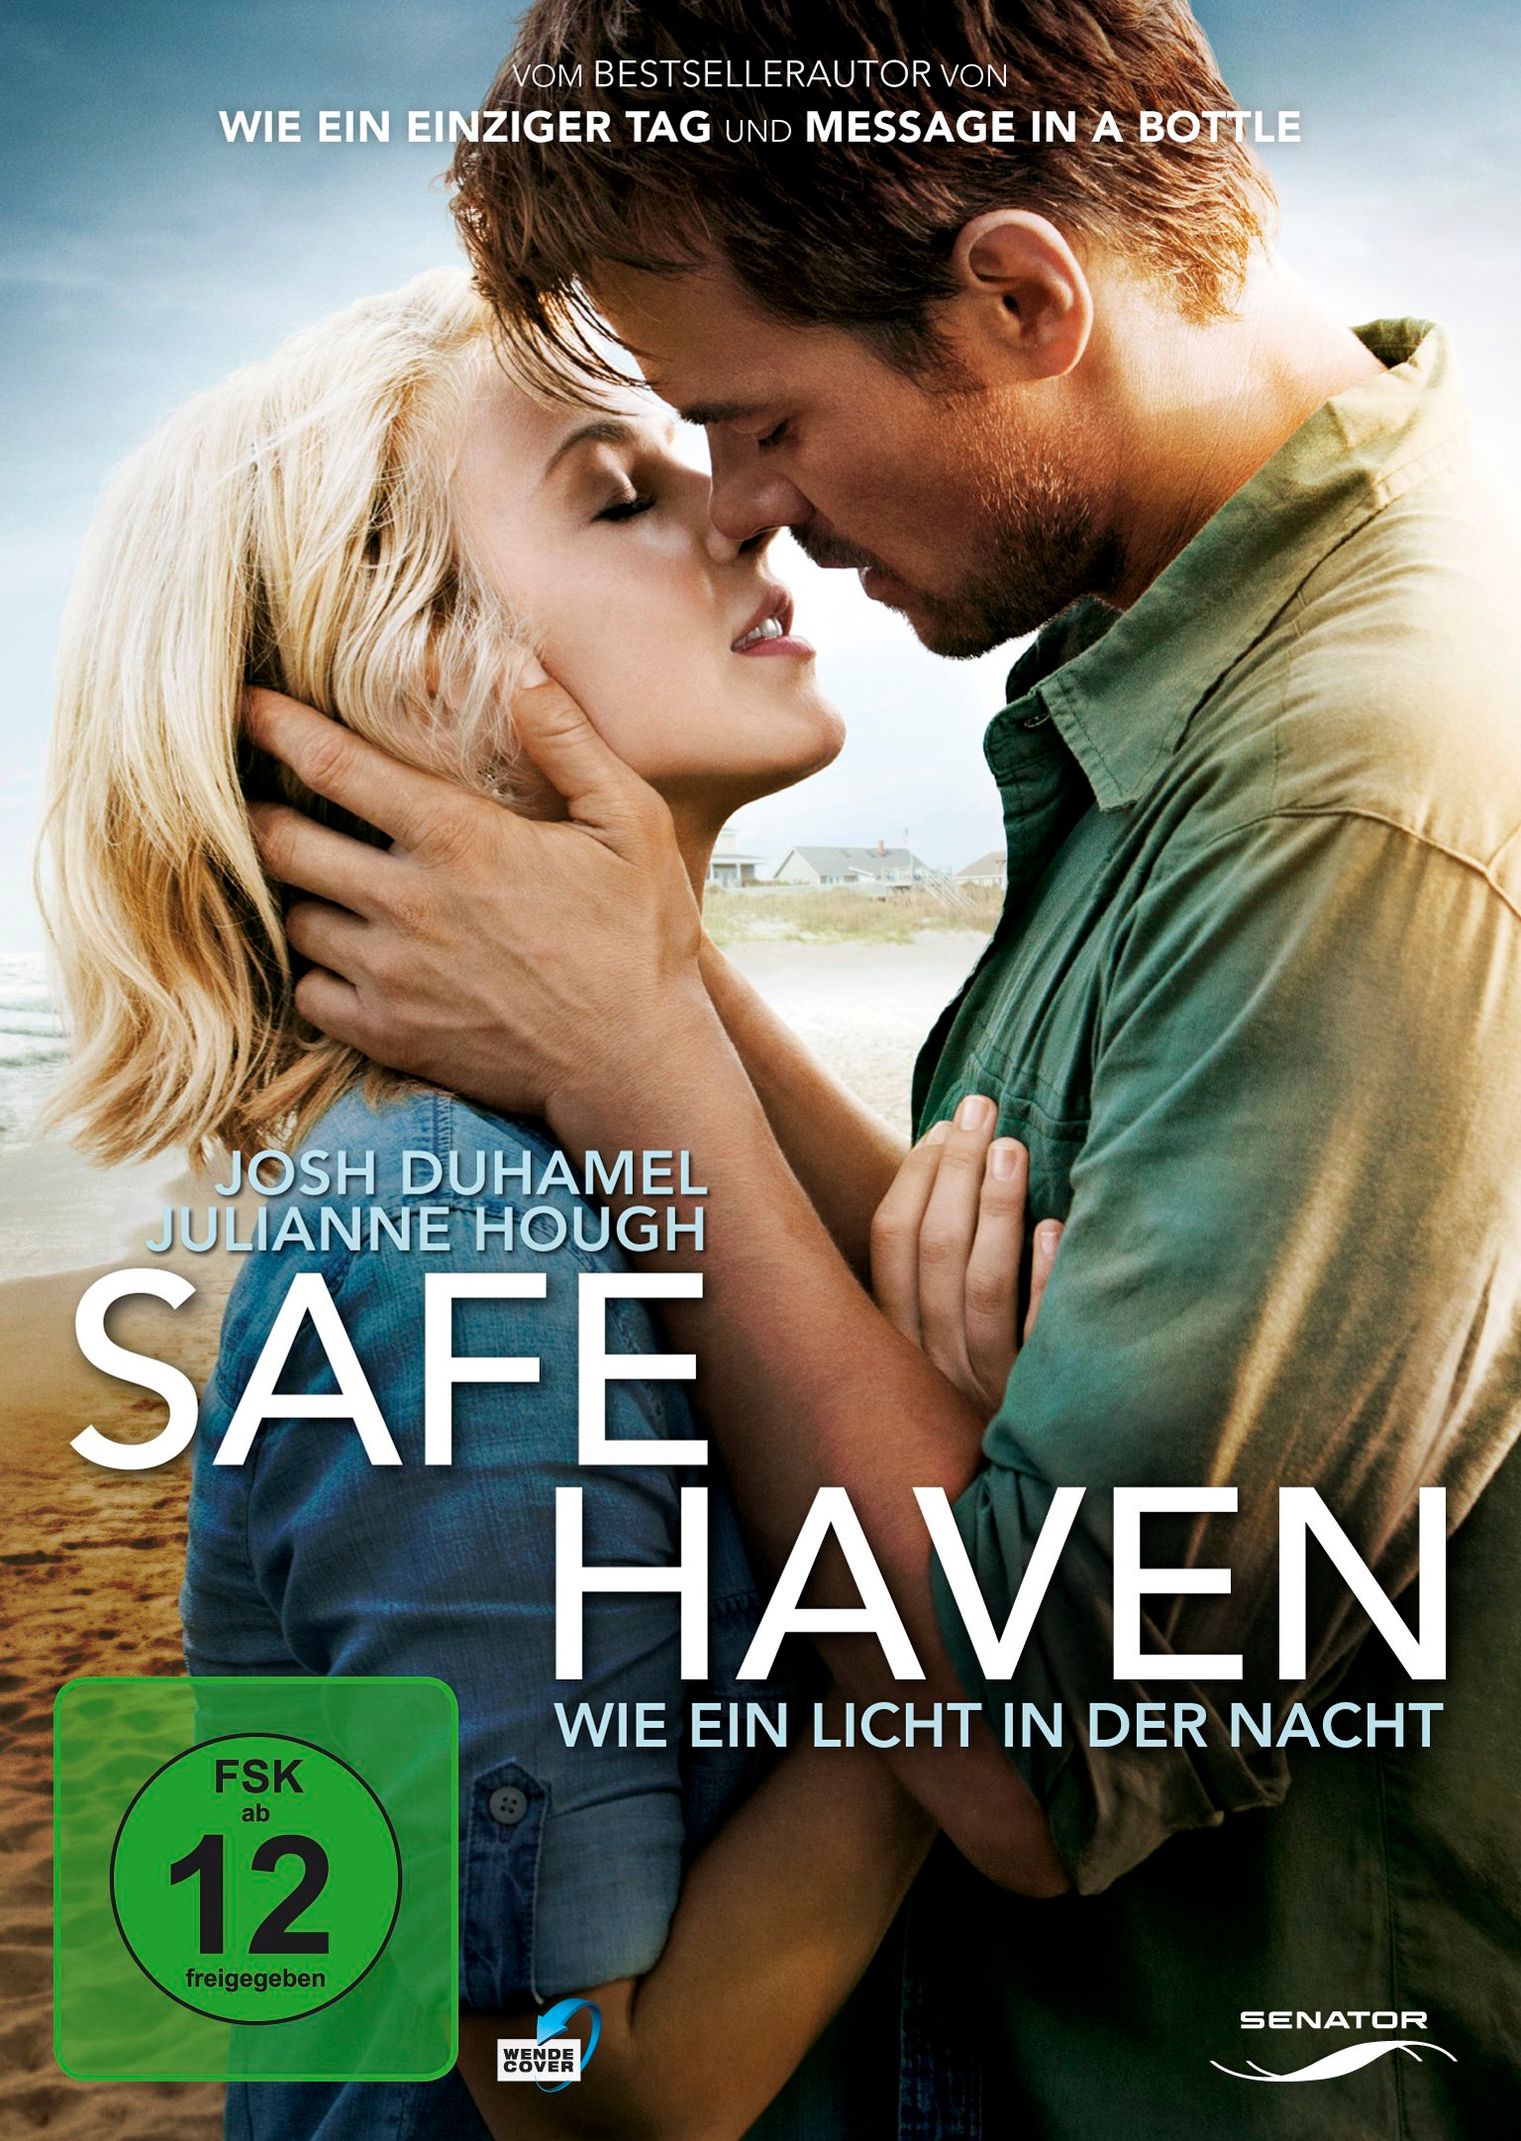 Safe Haven - Wie ein Licht in der Nacht DVD | Weltbild.de